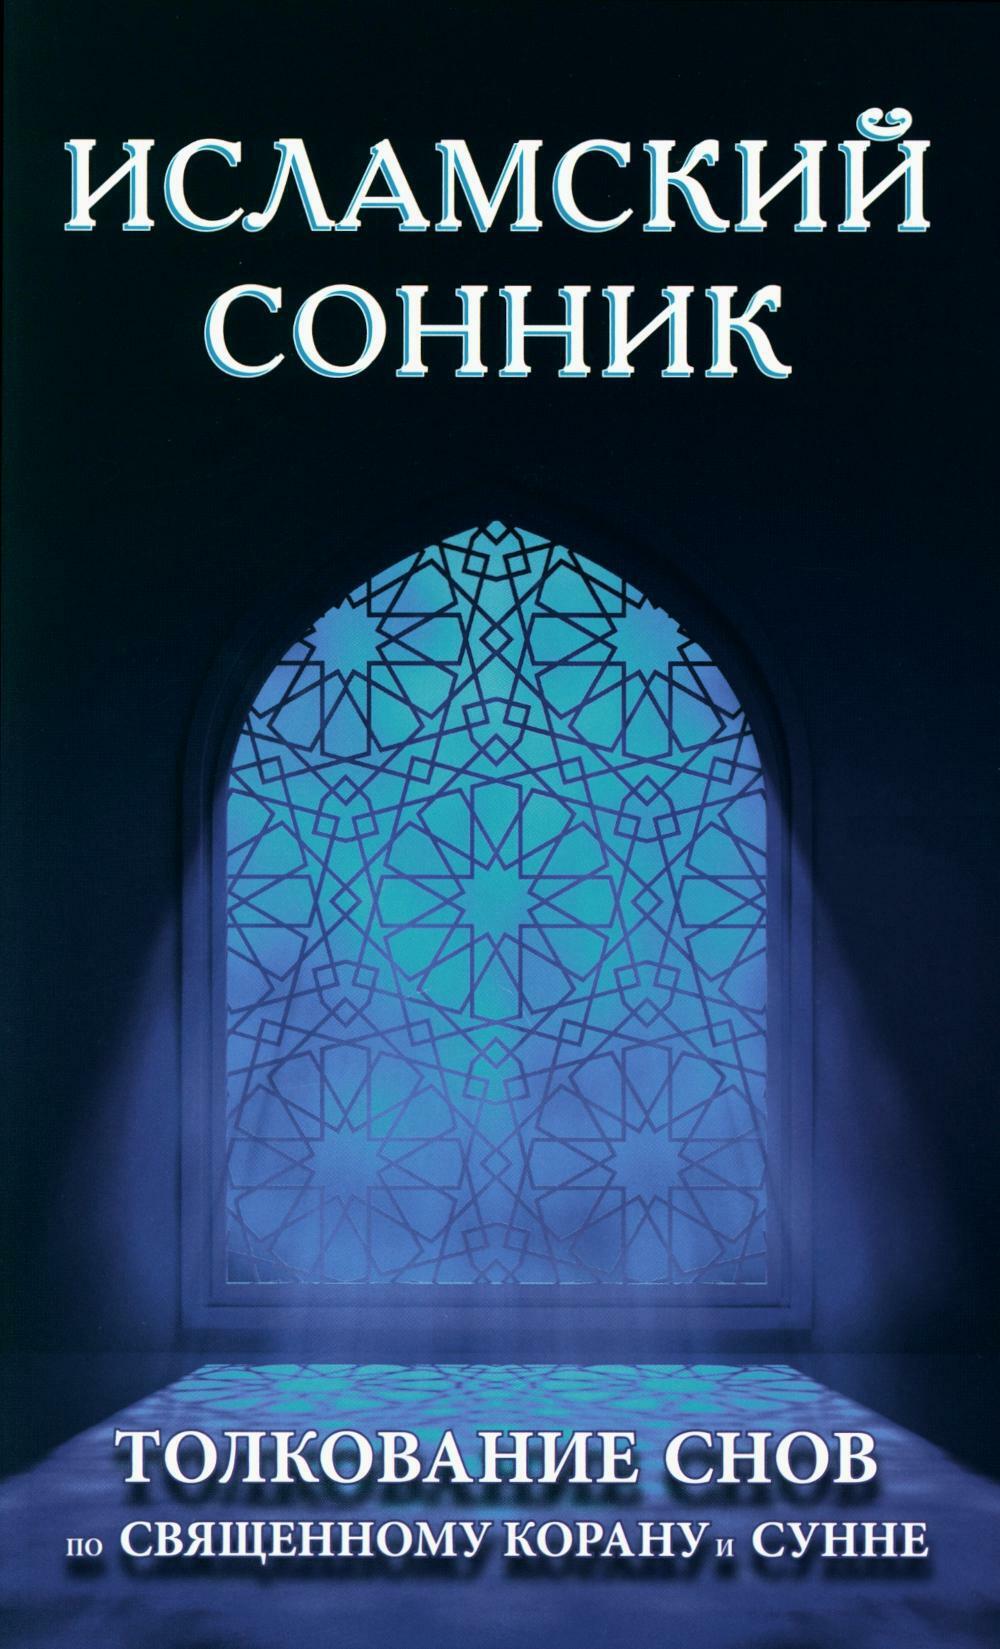 Книга «Исламский сонник. Толкование снов по Священному Корану и Сунне» —  купить с доставкой по Москве и России